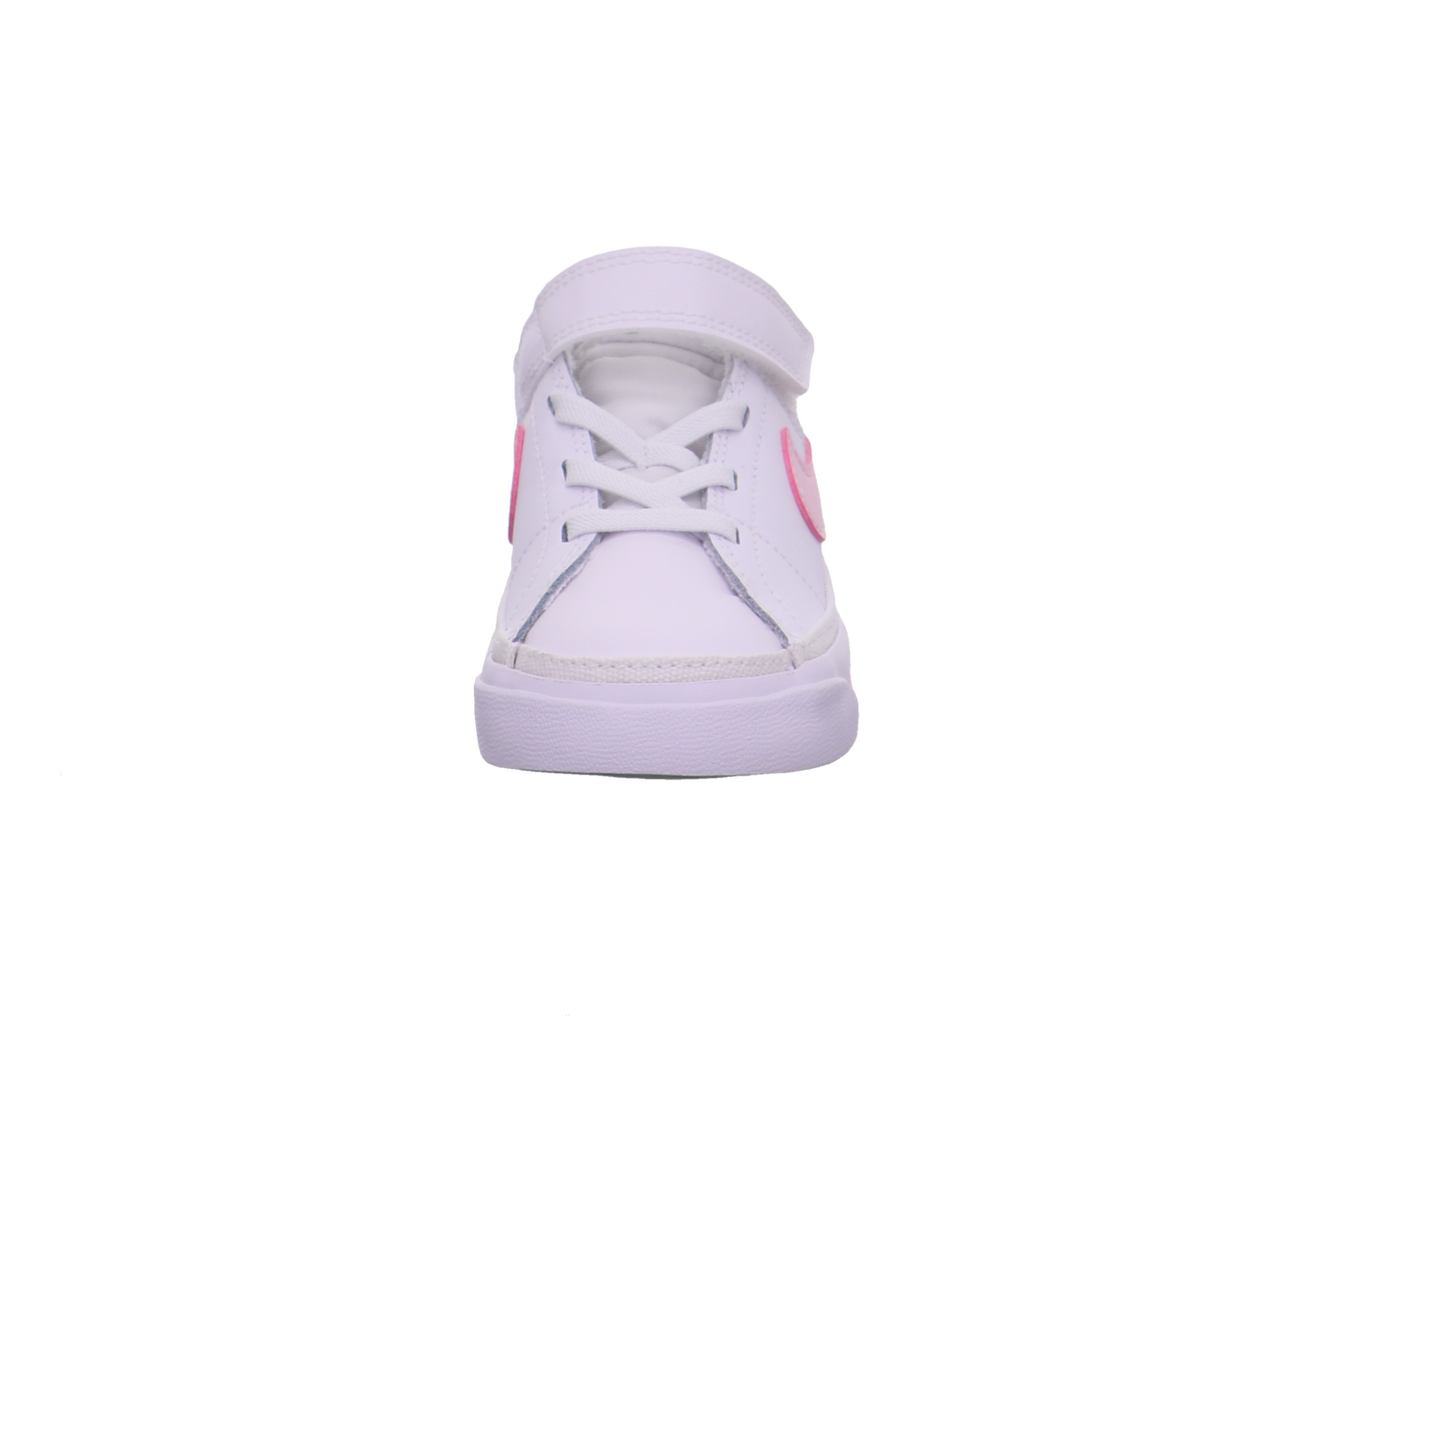 Nike Halbschuhe weiß rosa/rot Bild3